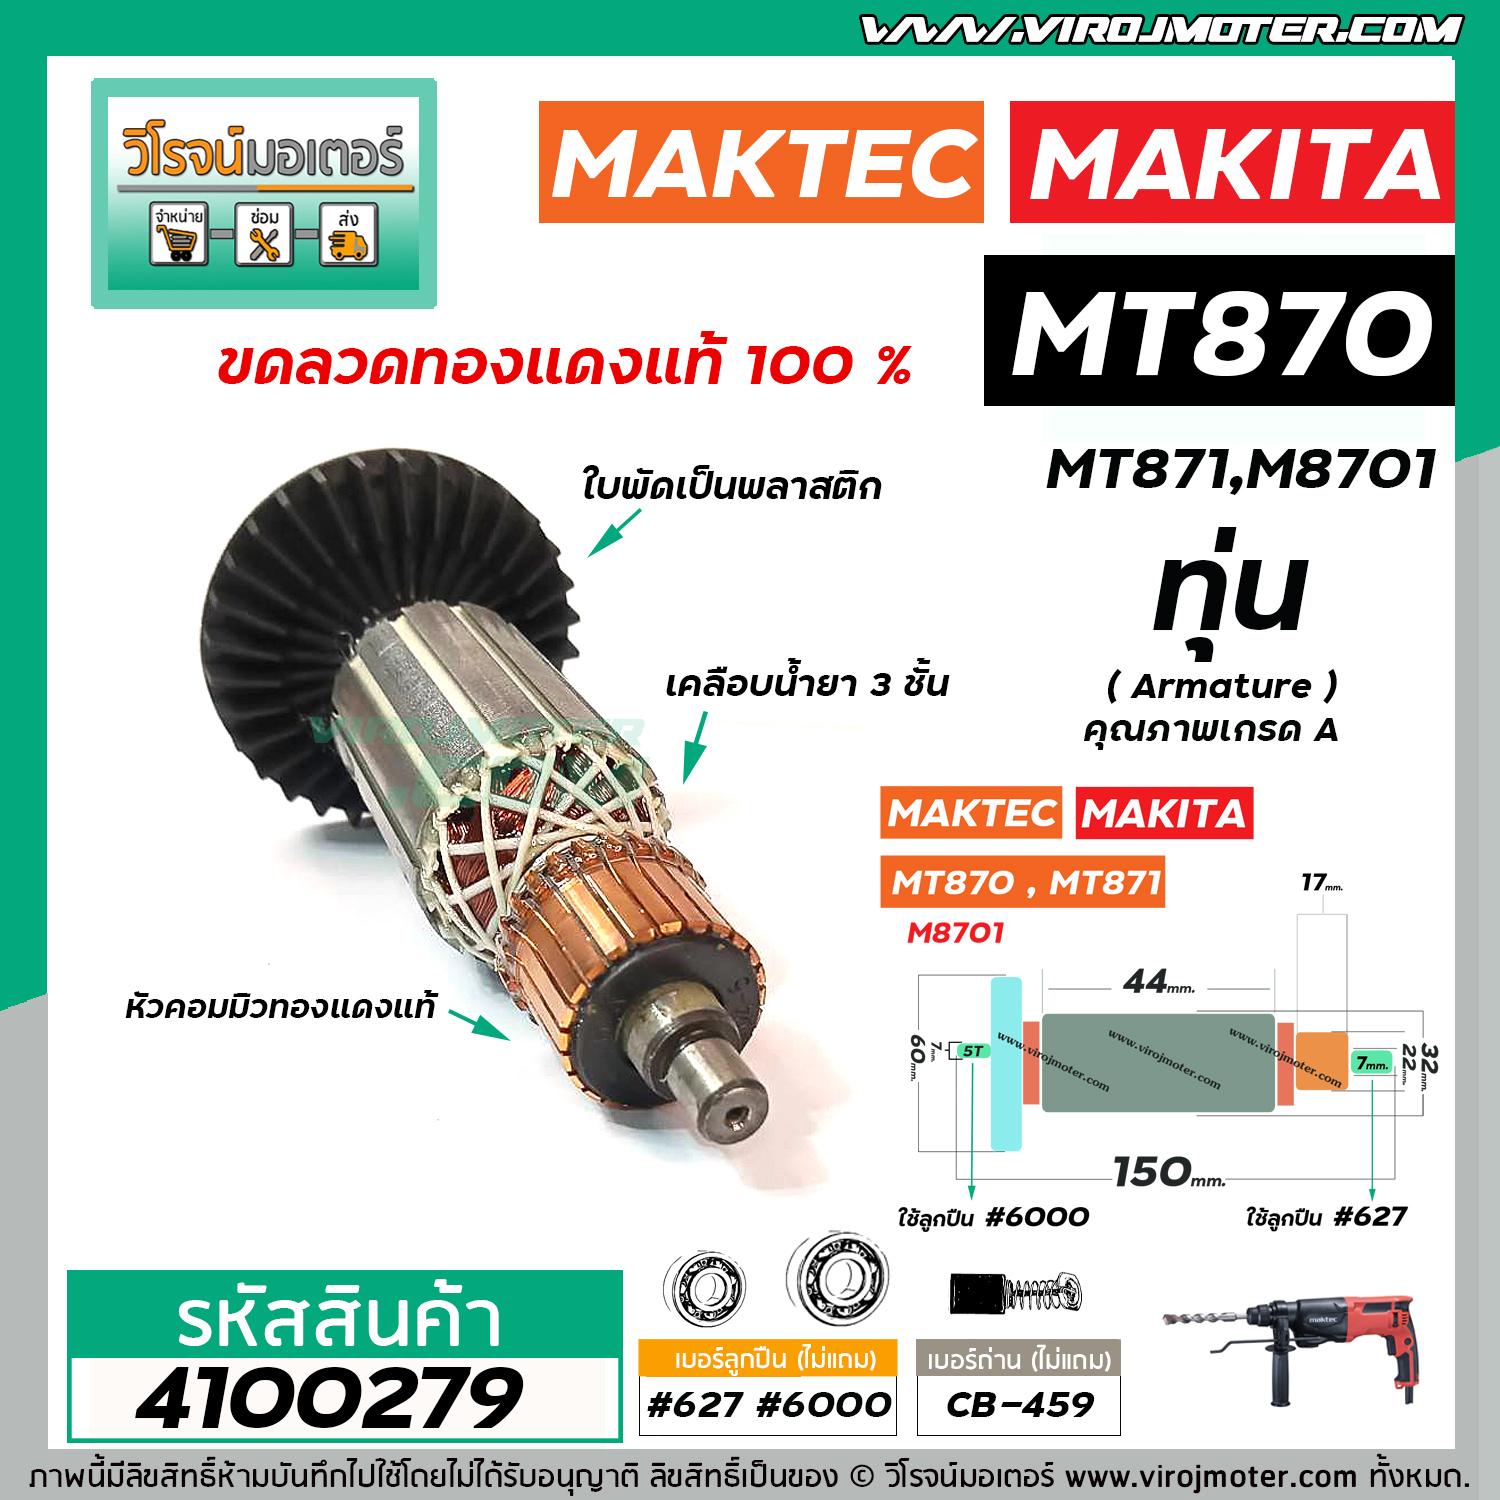 ทุ่นสว่านโรตารี่ MAKTEC รุ่น MT870 , MT871 / MAKITA รุ่น M8701 * ทุ่น ...